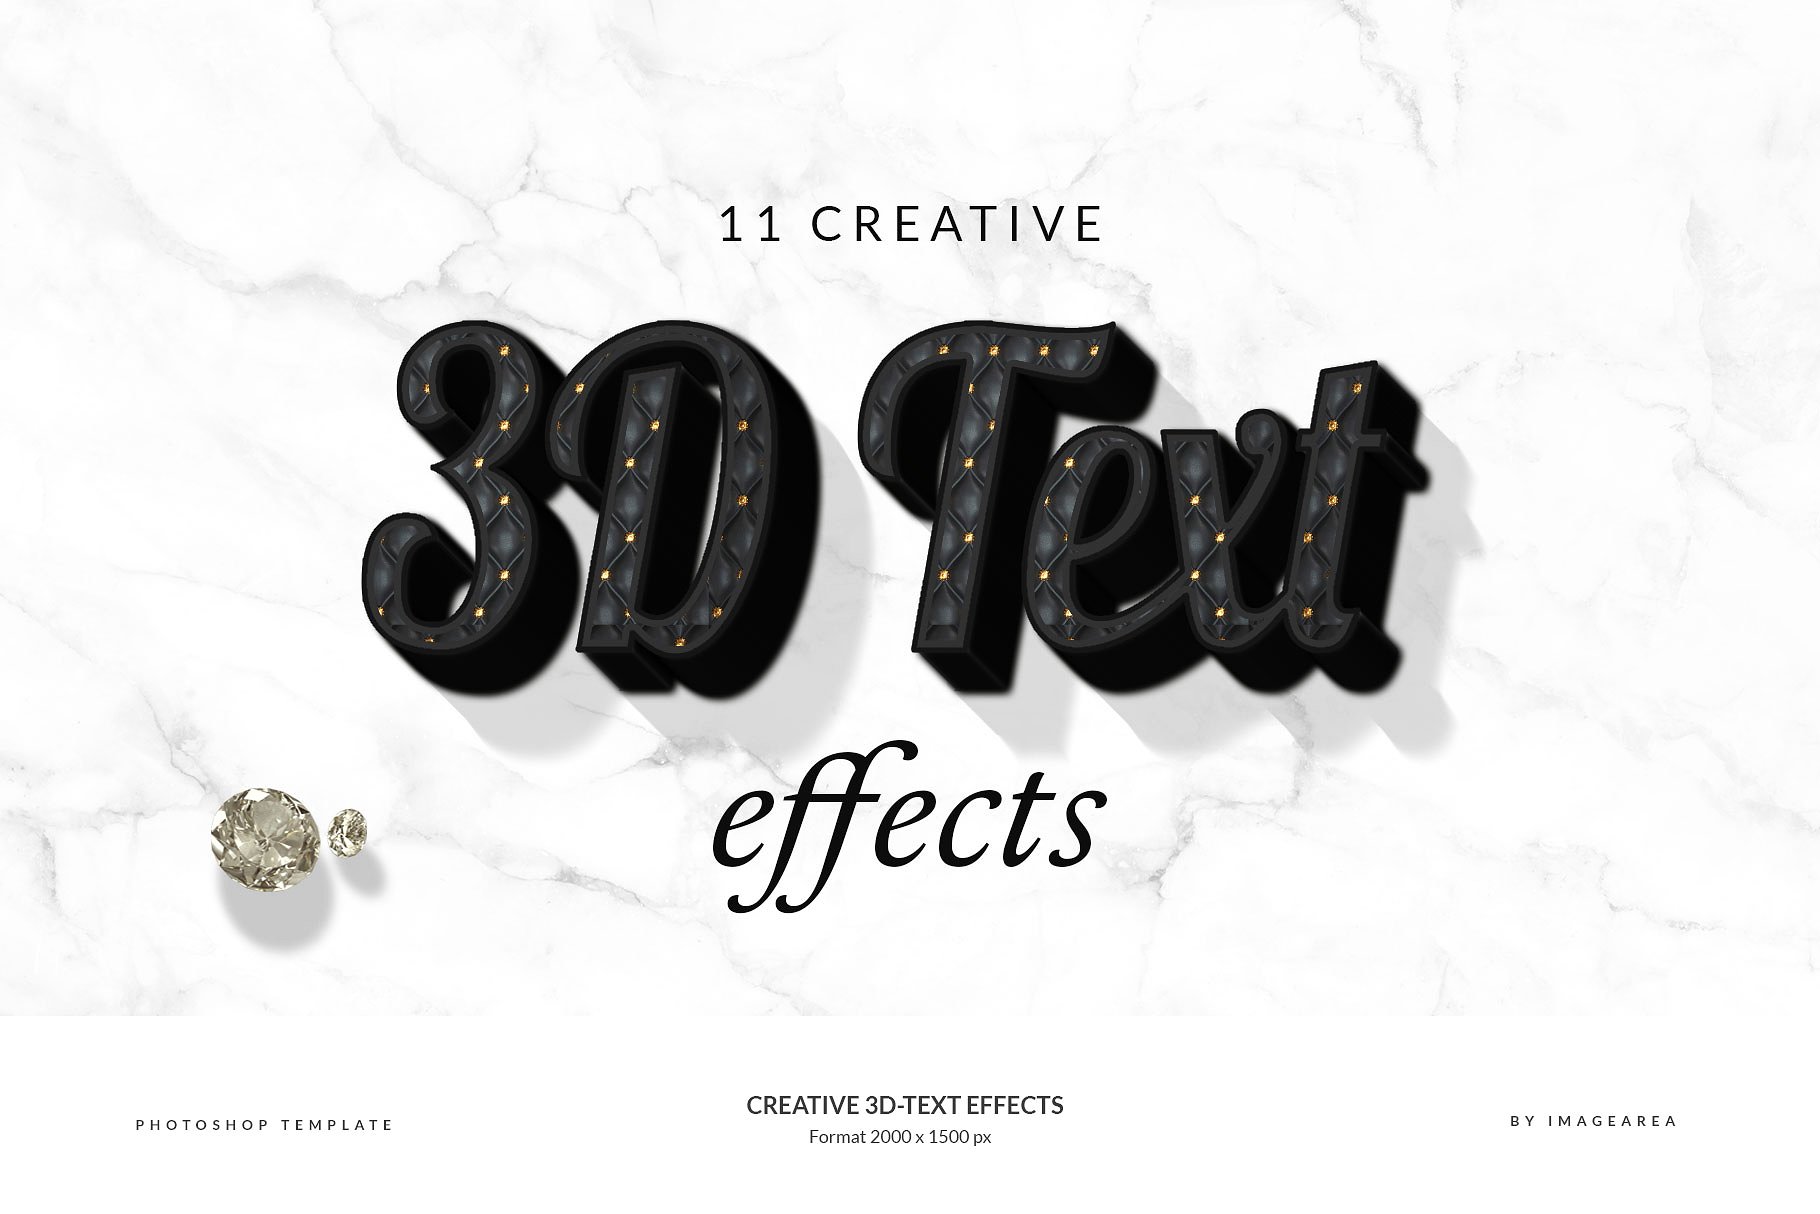 创意3D文字图层样式 Creative 3D-Text Effects插图